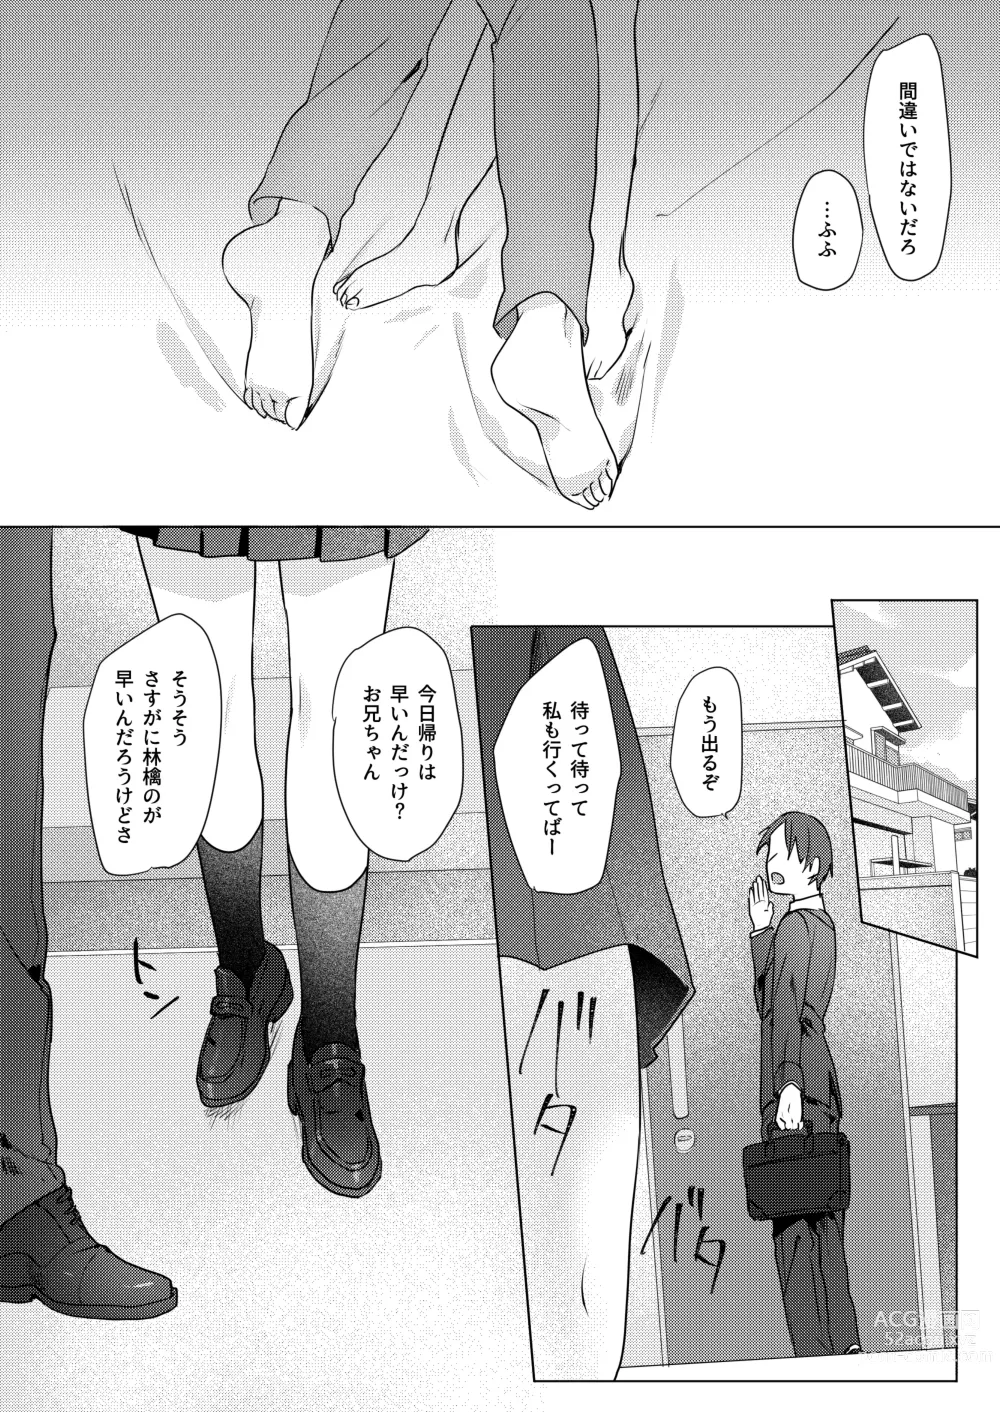 Page 55 of doujinshi Onii-chan Yuuwaku Keikaku